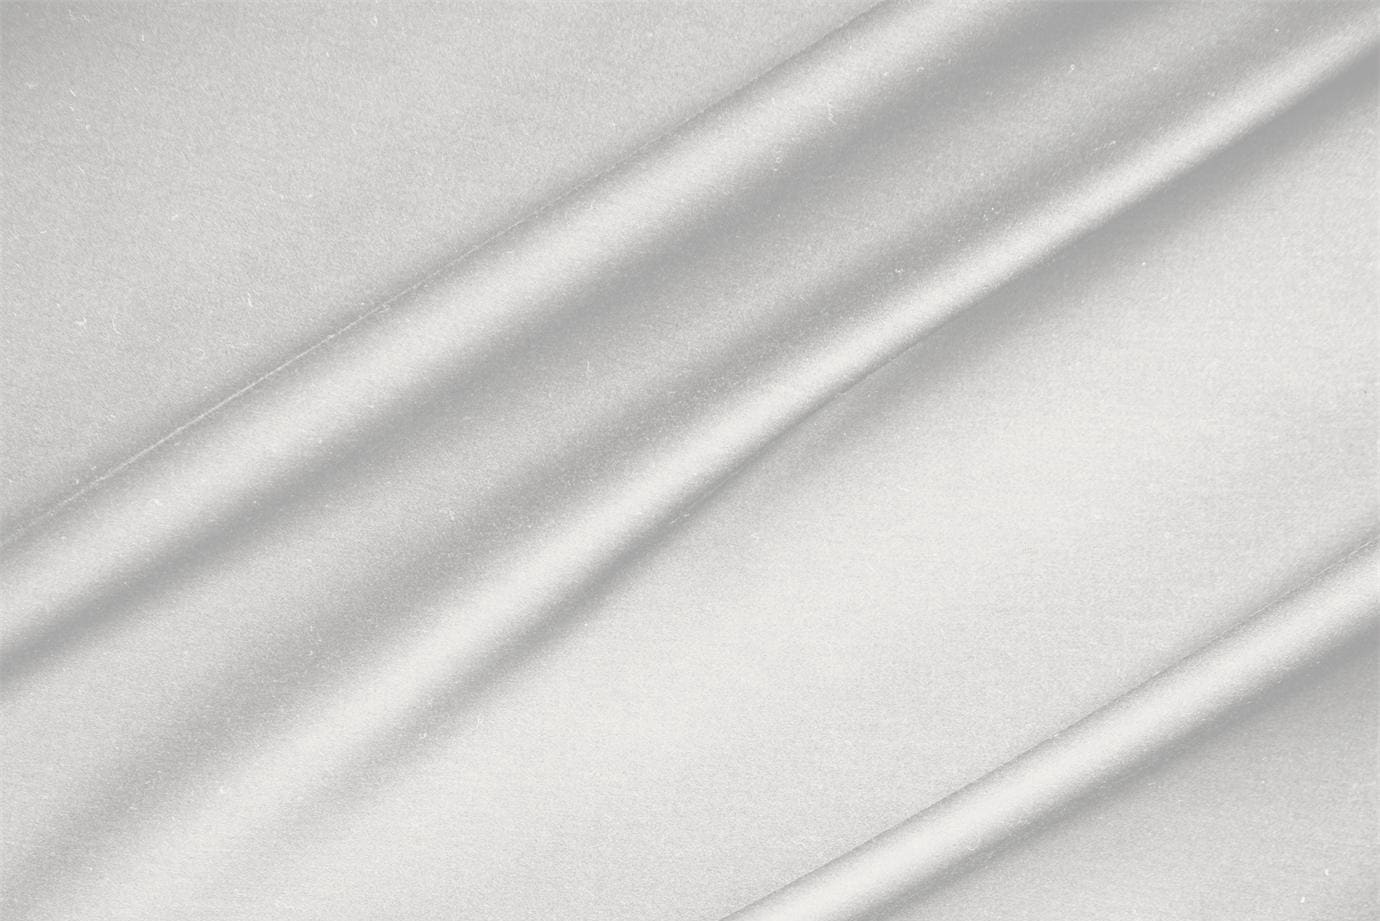 Tessuto Rasatello di Cotone Stretch Argento Perla in Cotone, Stretch per abbigliamento